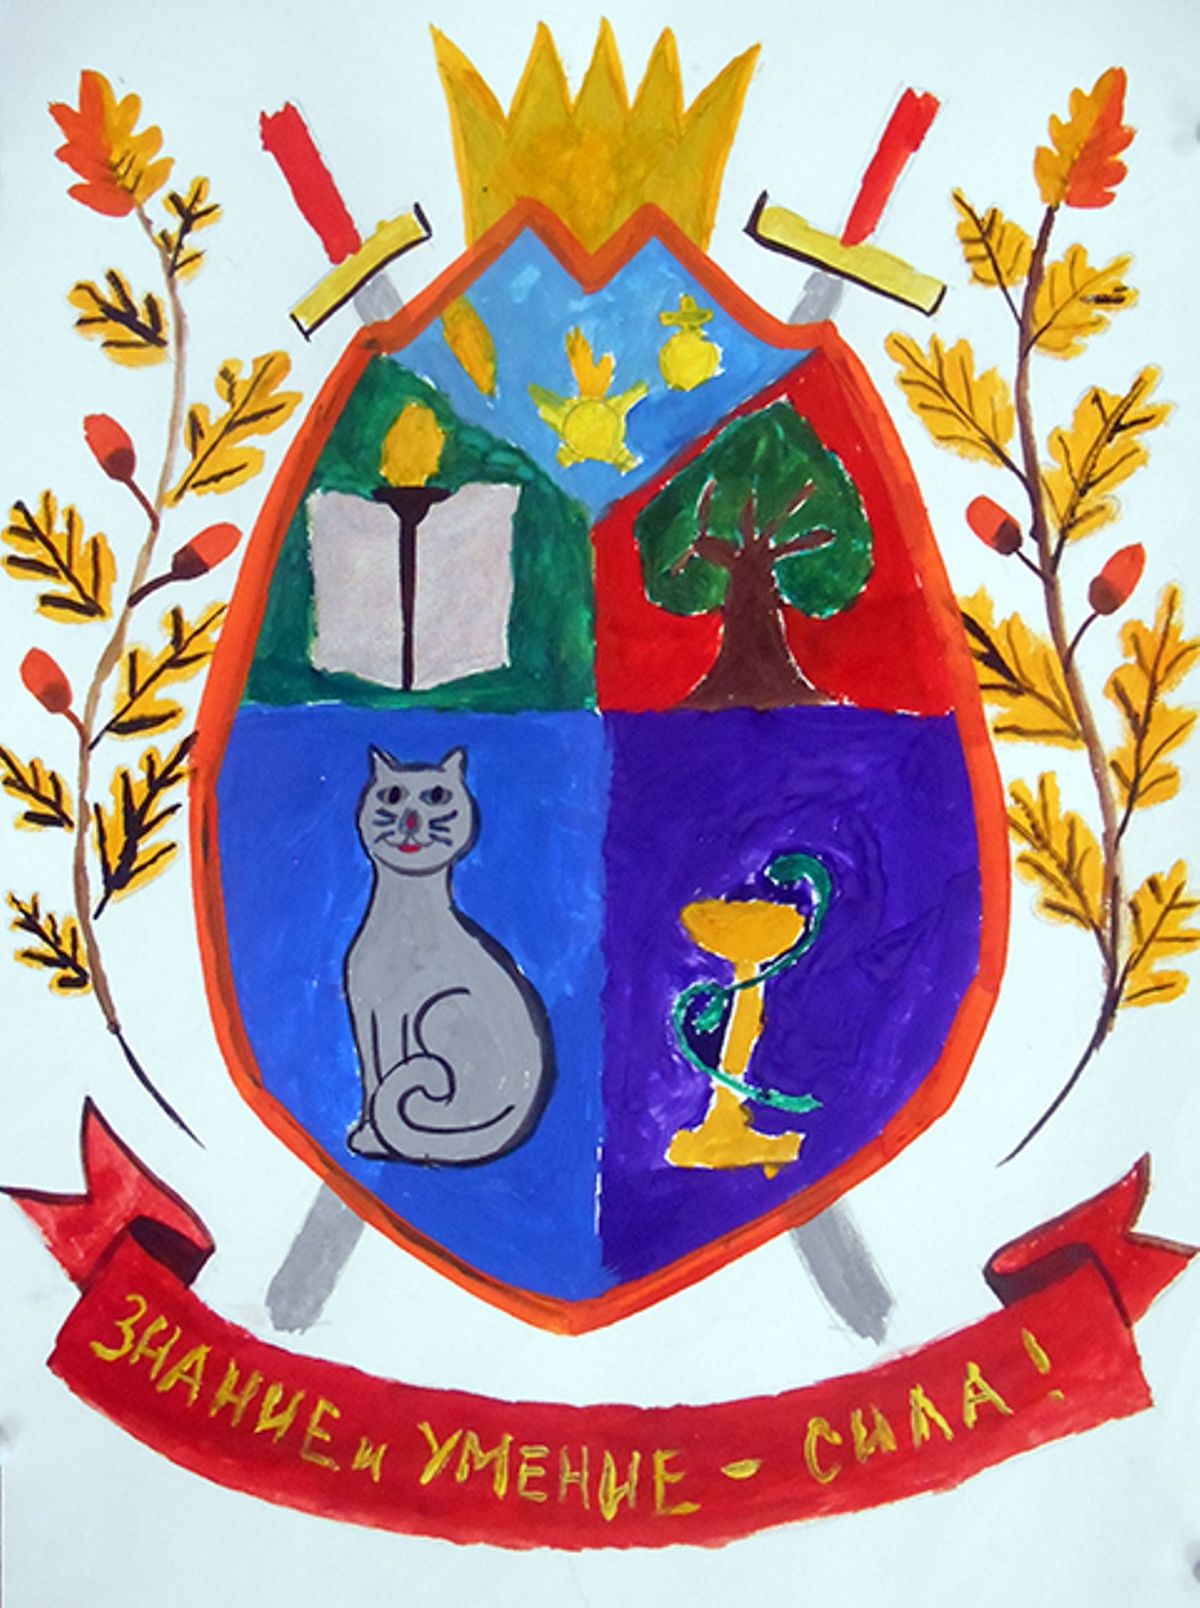 Эскиз герба своей семьи